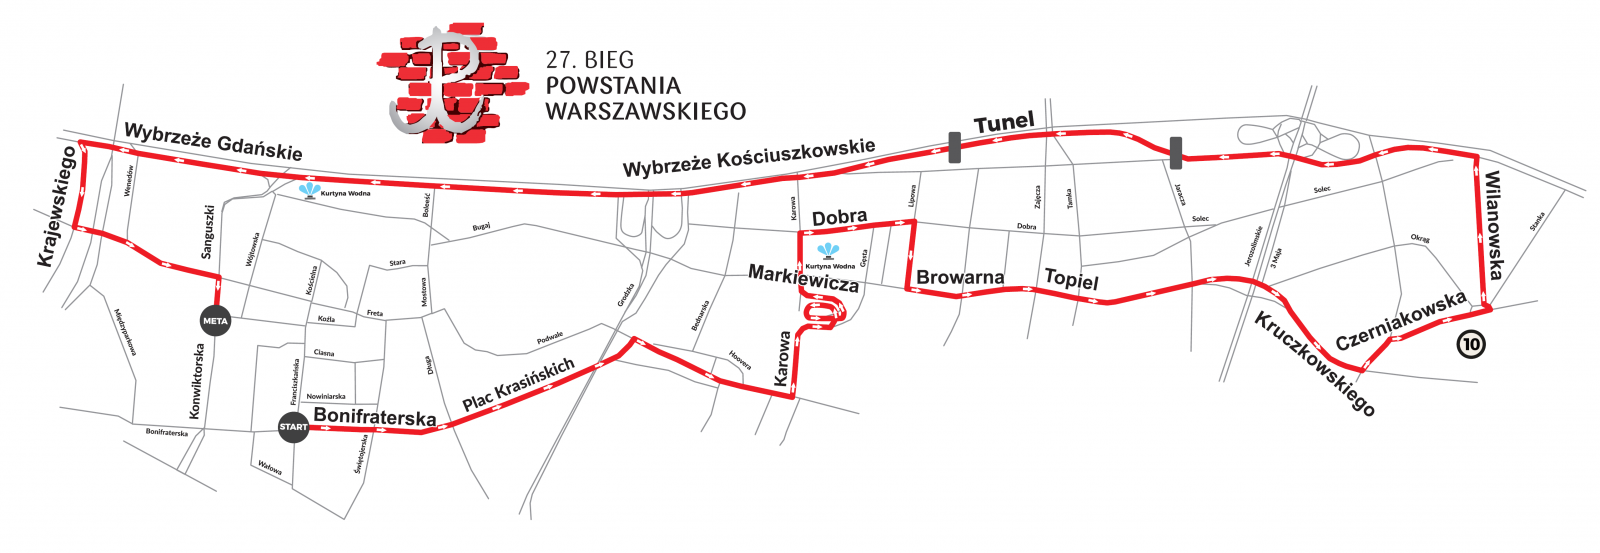 trasa_10km-bieg-powstania-2017